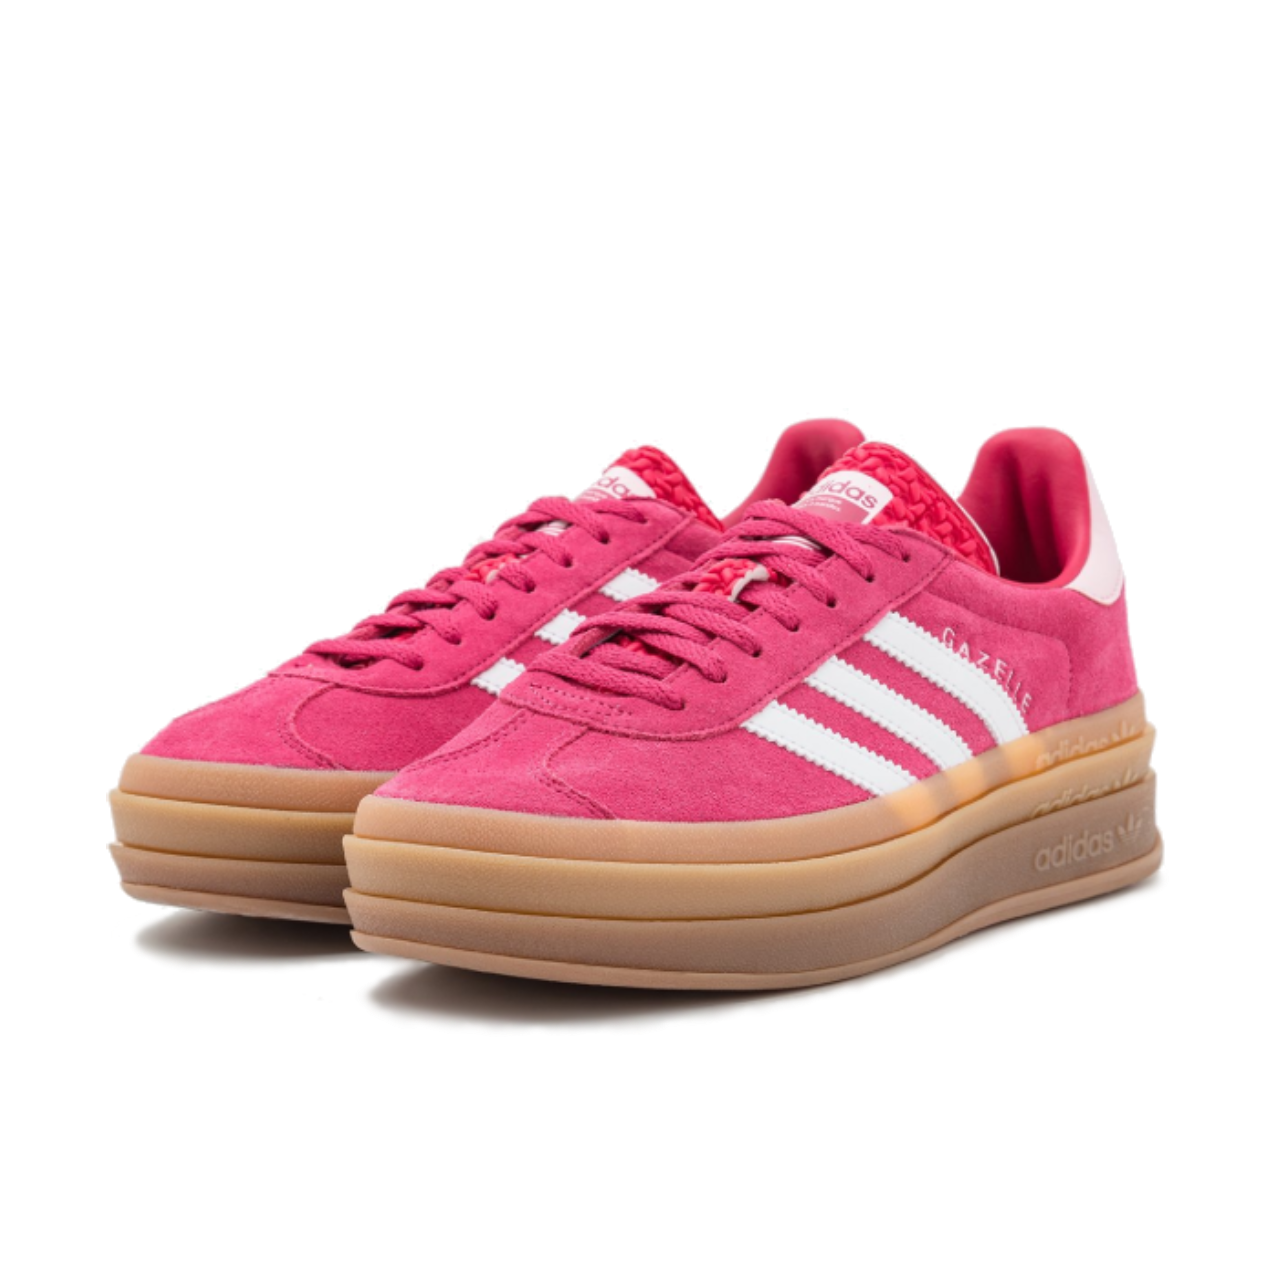 adidas Gazelle Bold Wild Pink - ID6997 - Medial